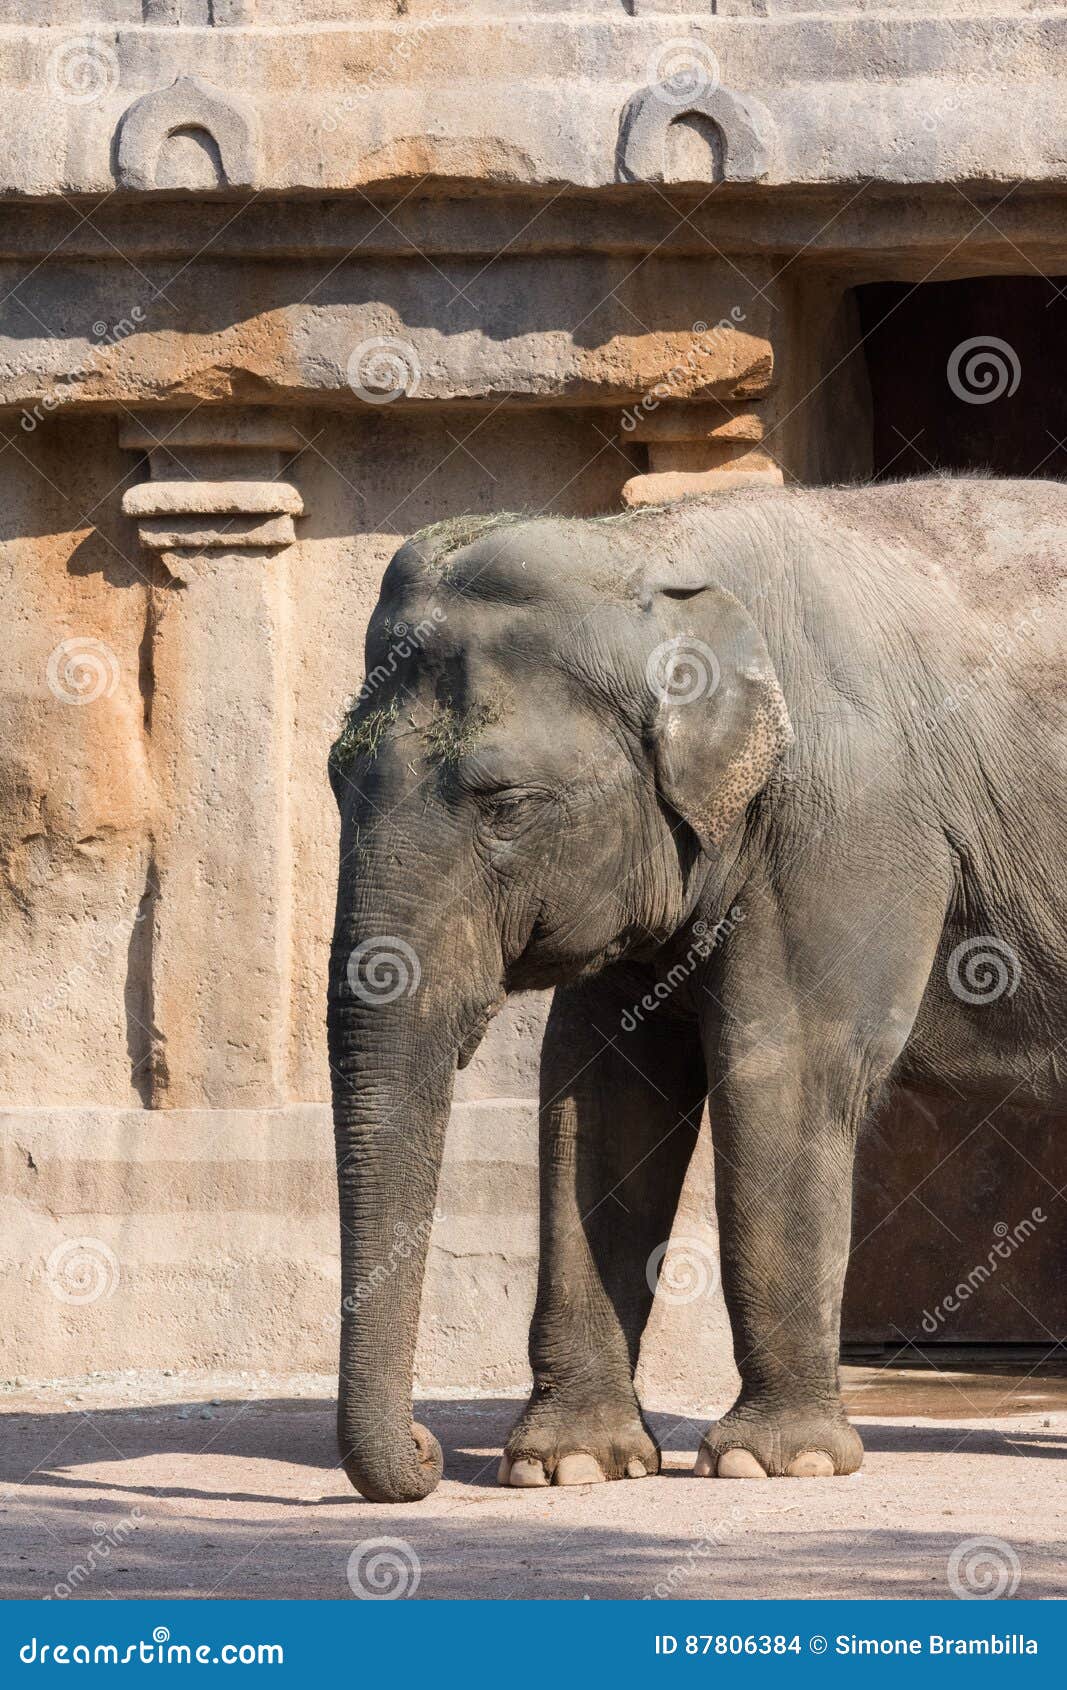 big indian elephant seen in profile on light background, vertical image. grande elefante indiano visto di profilo su sfondo chiaro